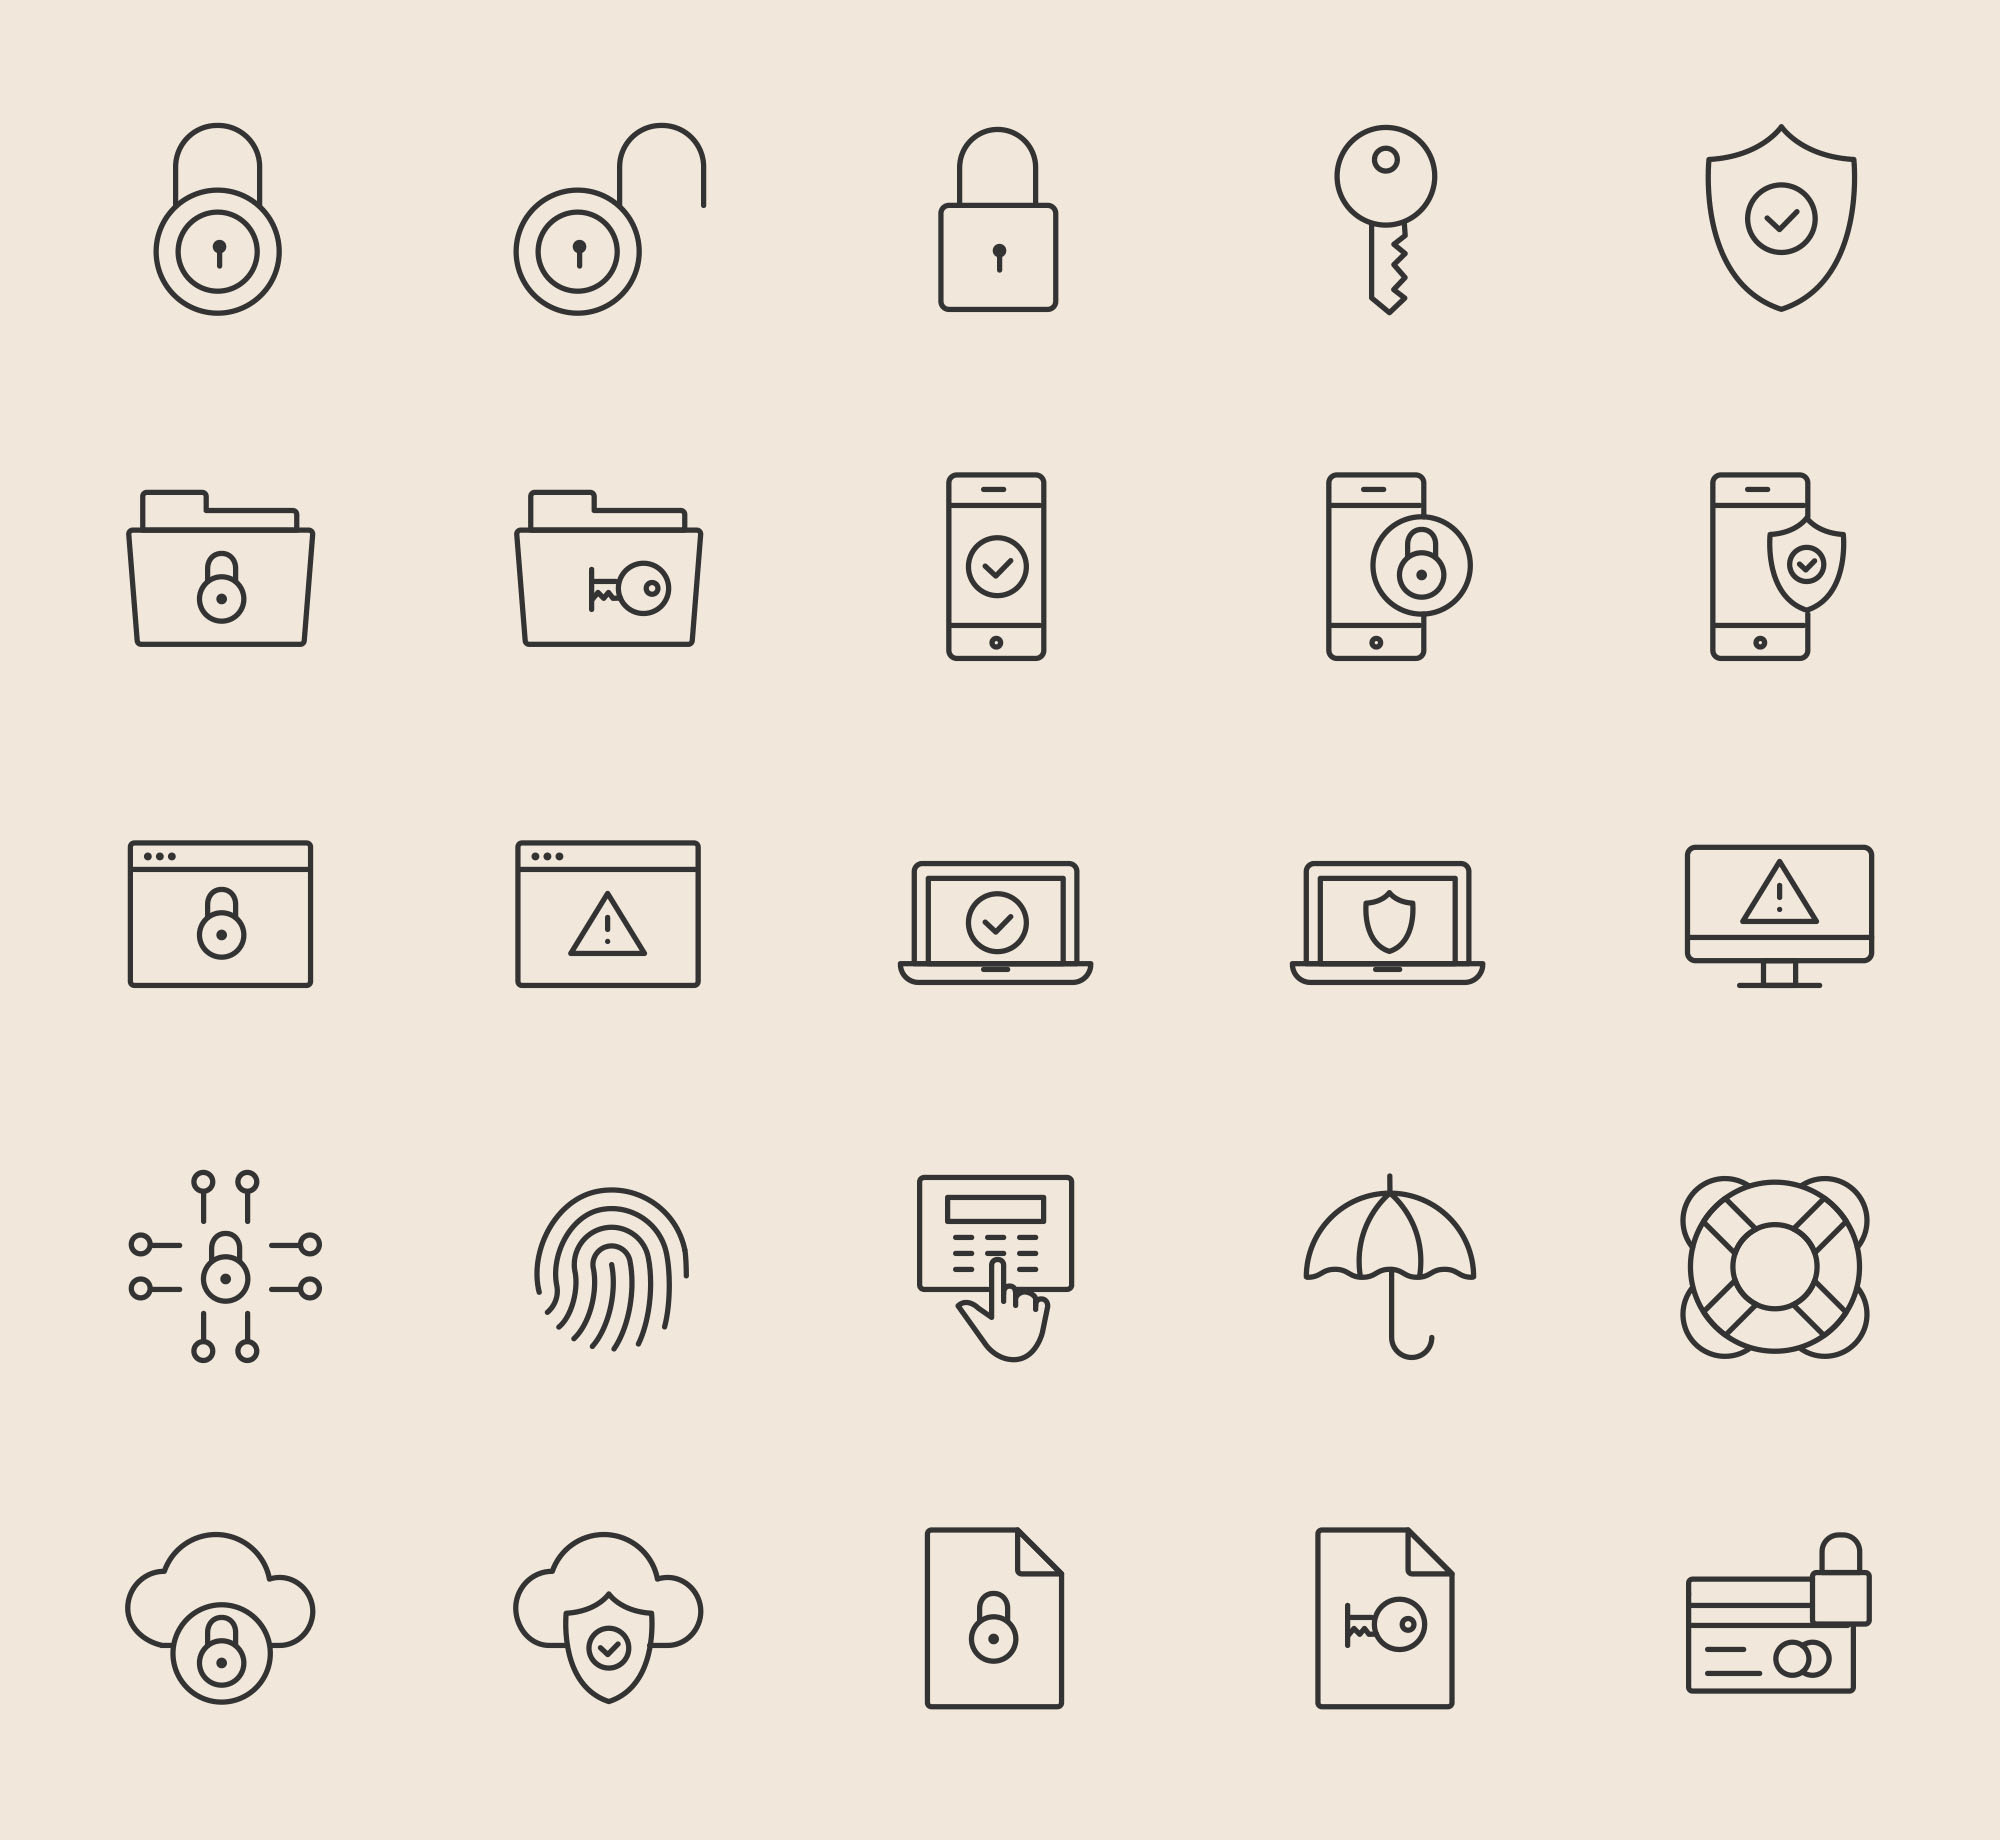 25枚安全相关主题矢量图标素材 25 Security Icons插图